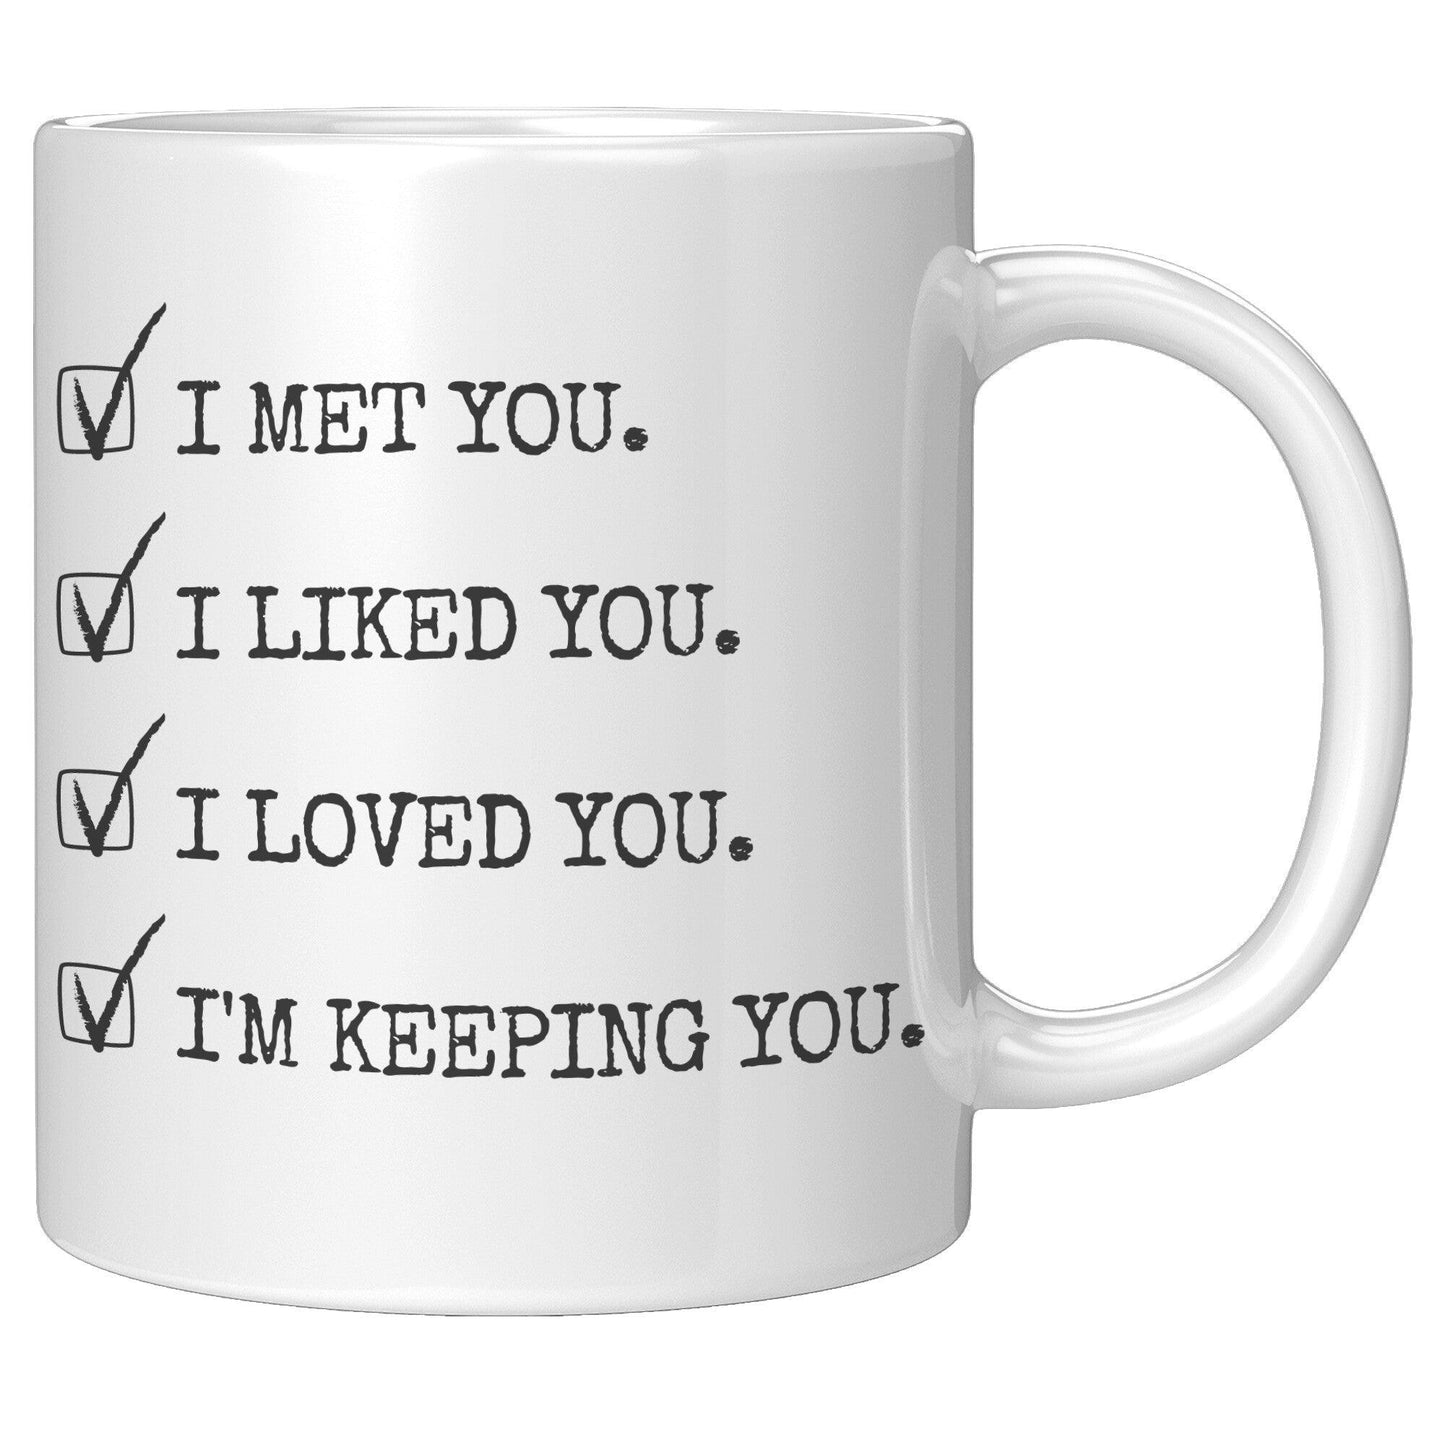 I Met You. I Liked You. I Loved You. I'm Keeping You. White Mug - TheGivenGet